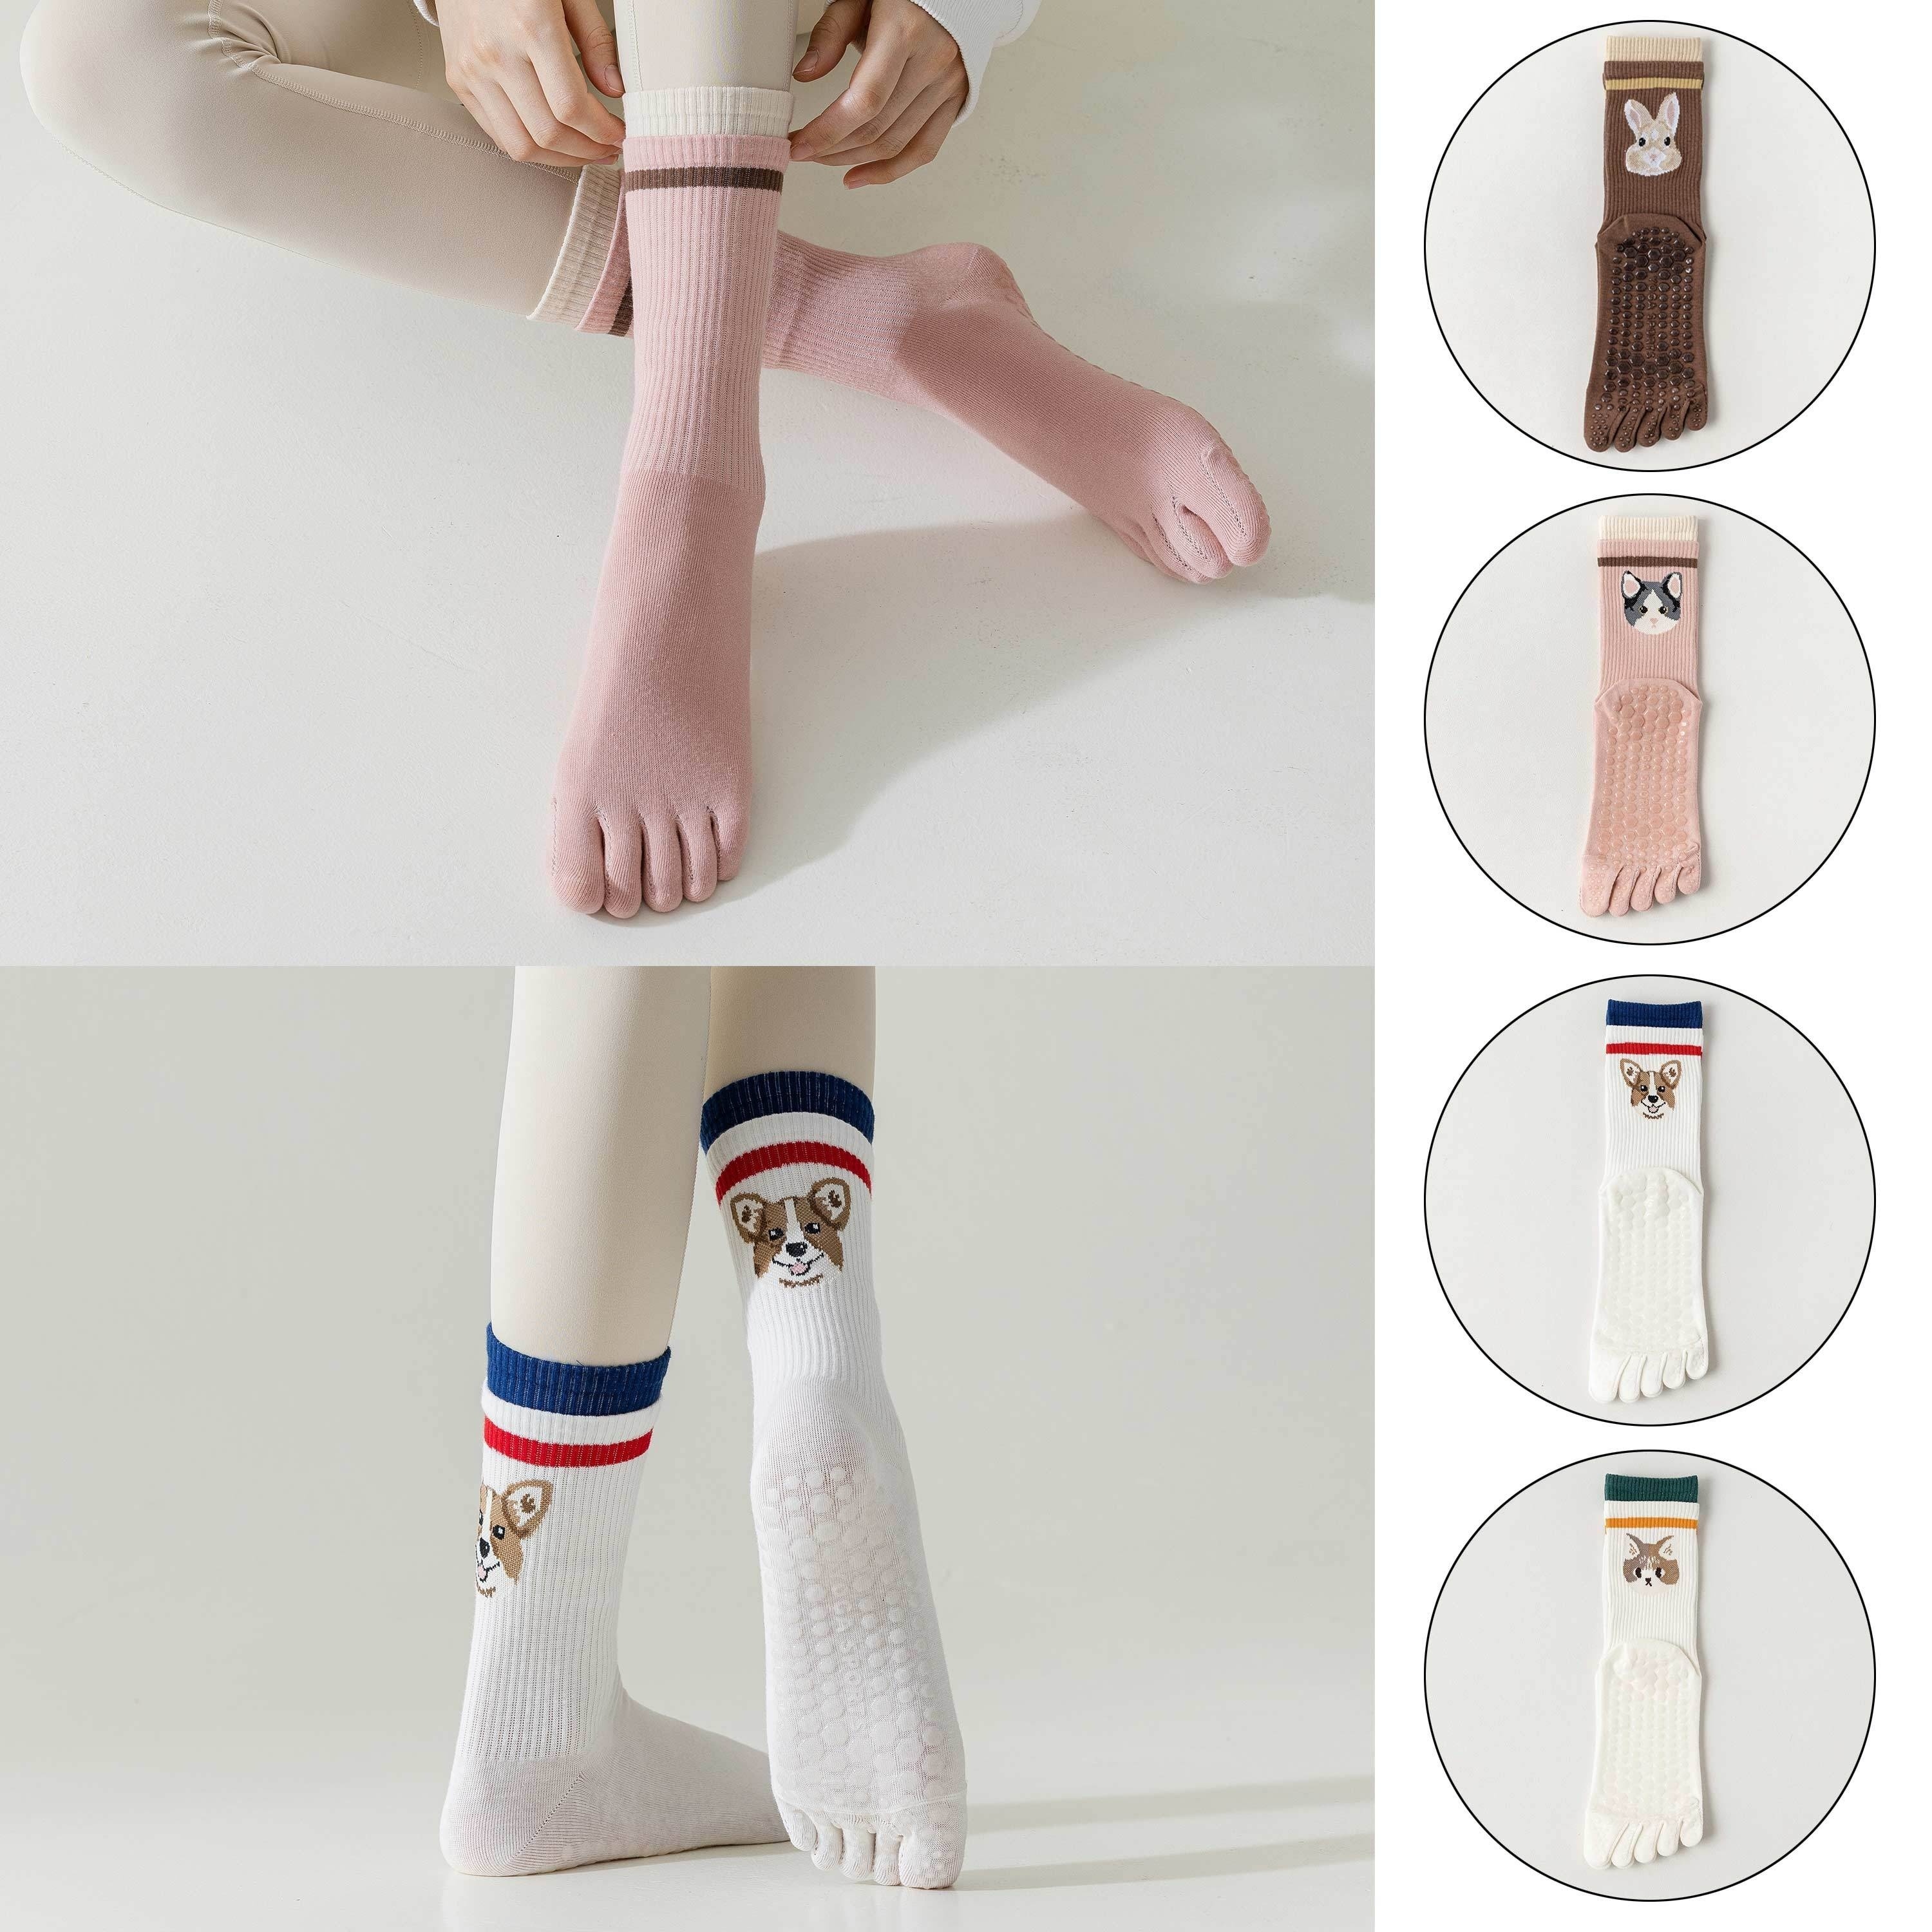 2 Pairs Non Slip Yoga Socks With Grips,non-slip Five Toe Socks For Pilates,  Barre, Ballet, Fitness